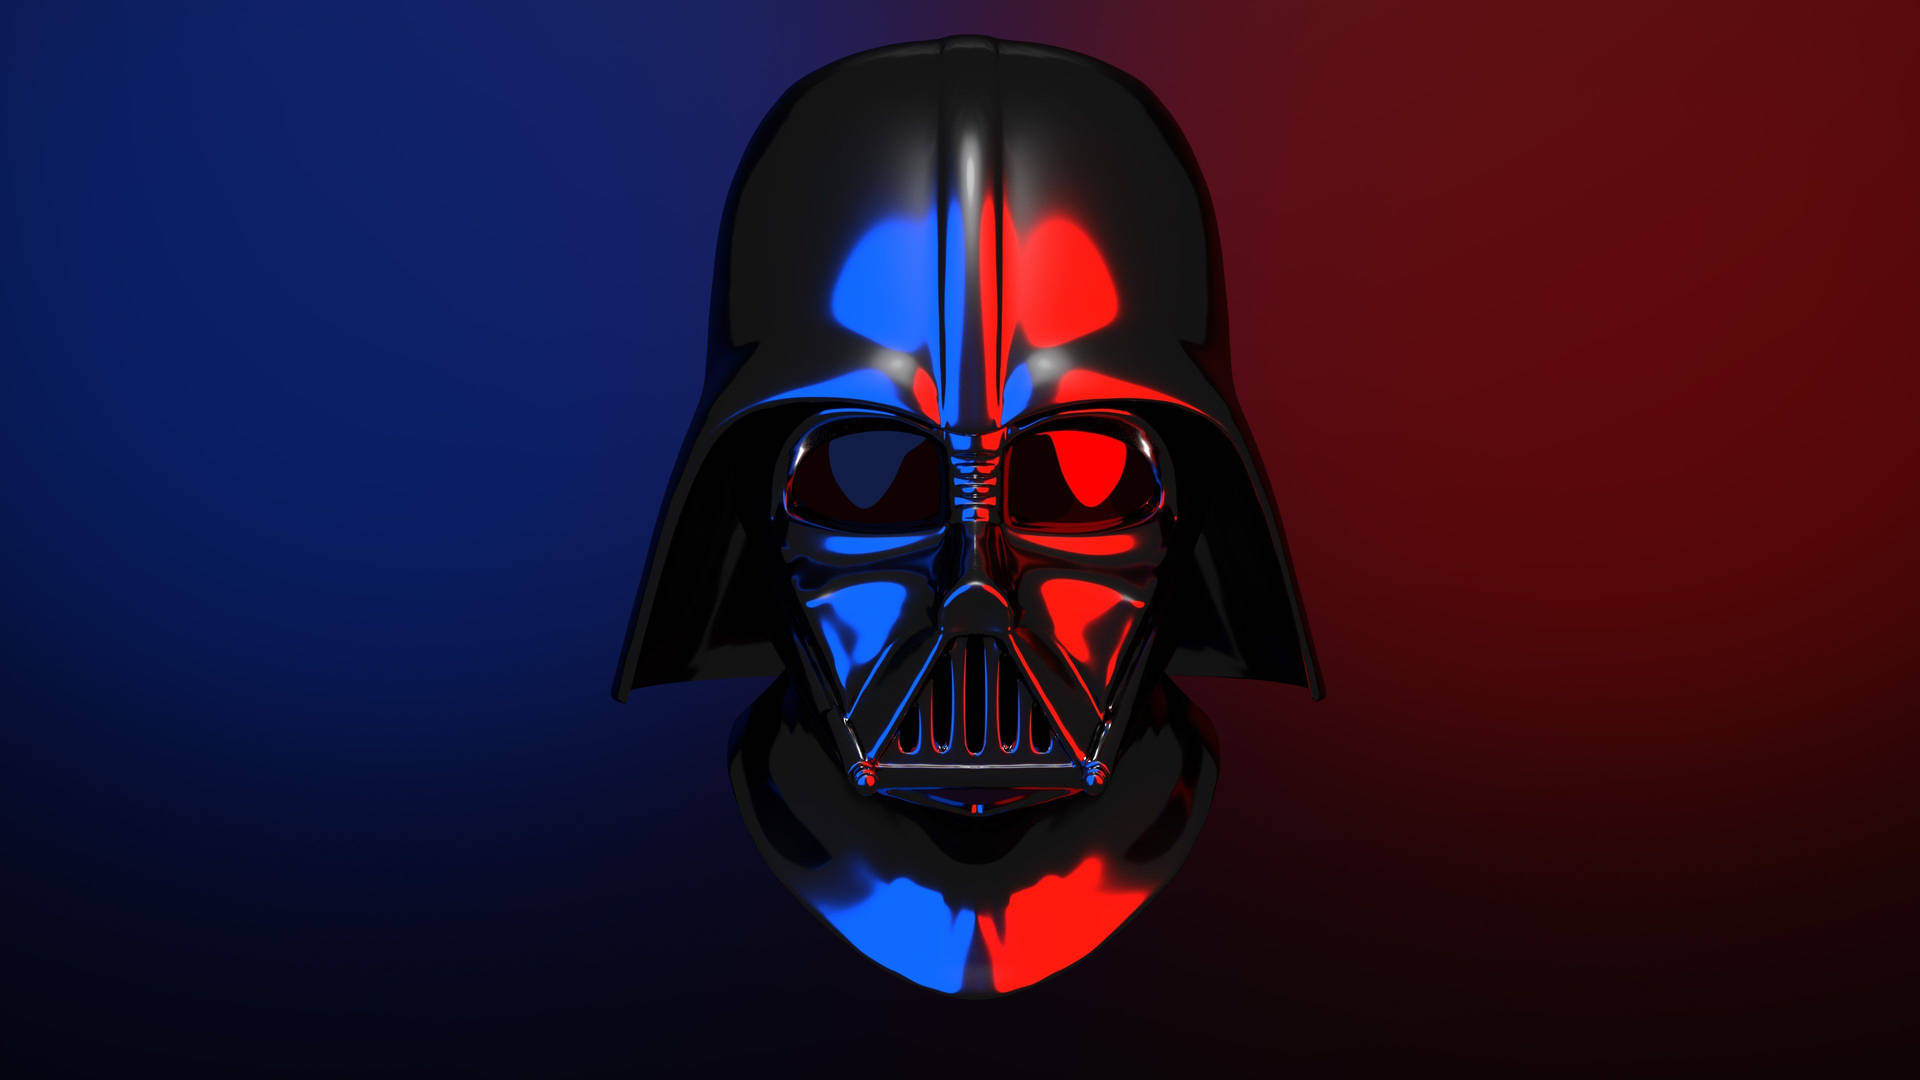 Det Är En Unik Och Imponerande Bakgrundsbild Till Ditt Dator- Eller Mobilskrivbord. Den Visar Darth Vaders Mask I 3d Och Är Tillgänglig I Storleken 3840 X 2160. Perfekt För Star Wars-fans! Wallpaper